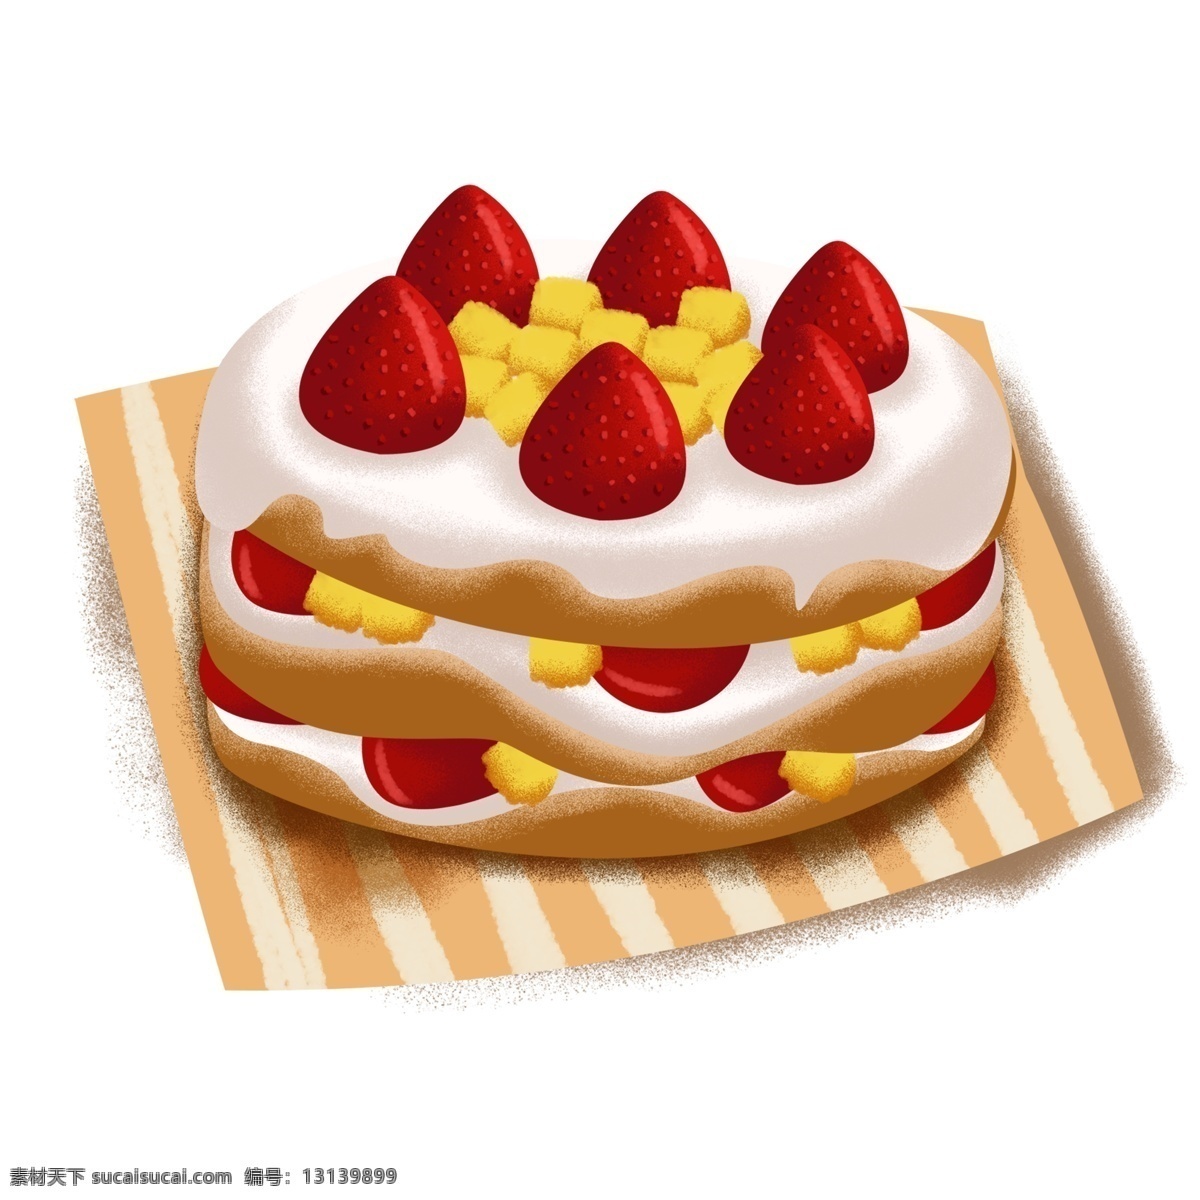 桌布 上 水果 裸 蛋糕 卡通 草莓裸蛋糕 奶油裸蛋糕 手绘 桌布上的蛋糕 点心